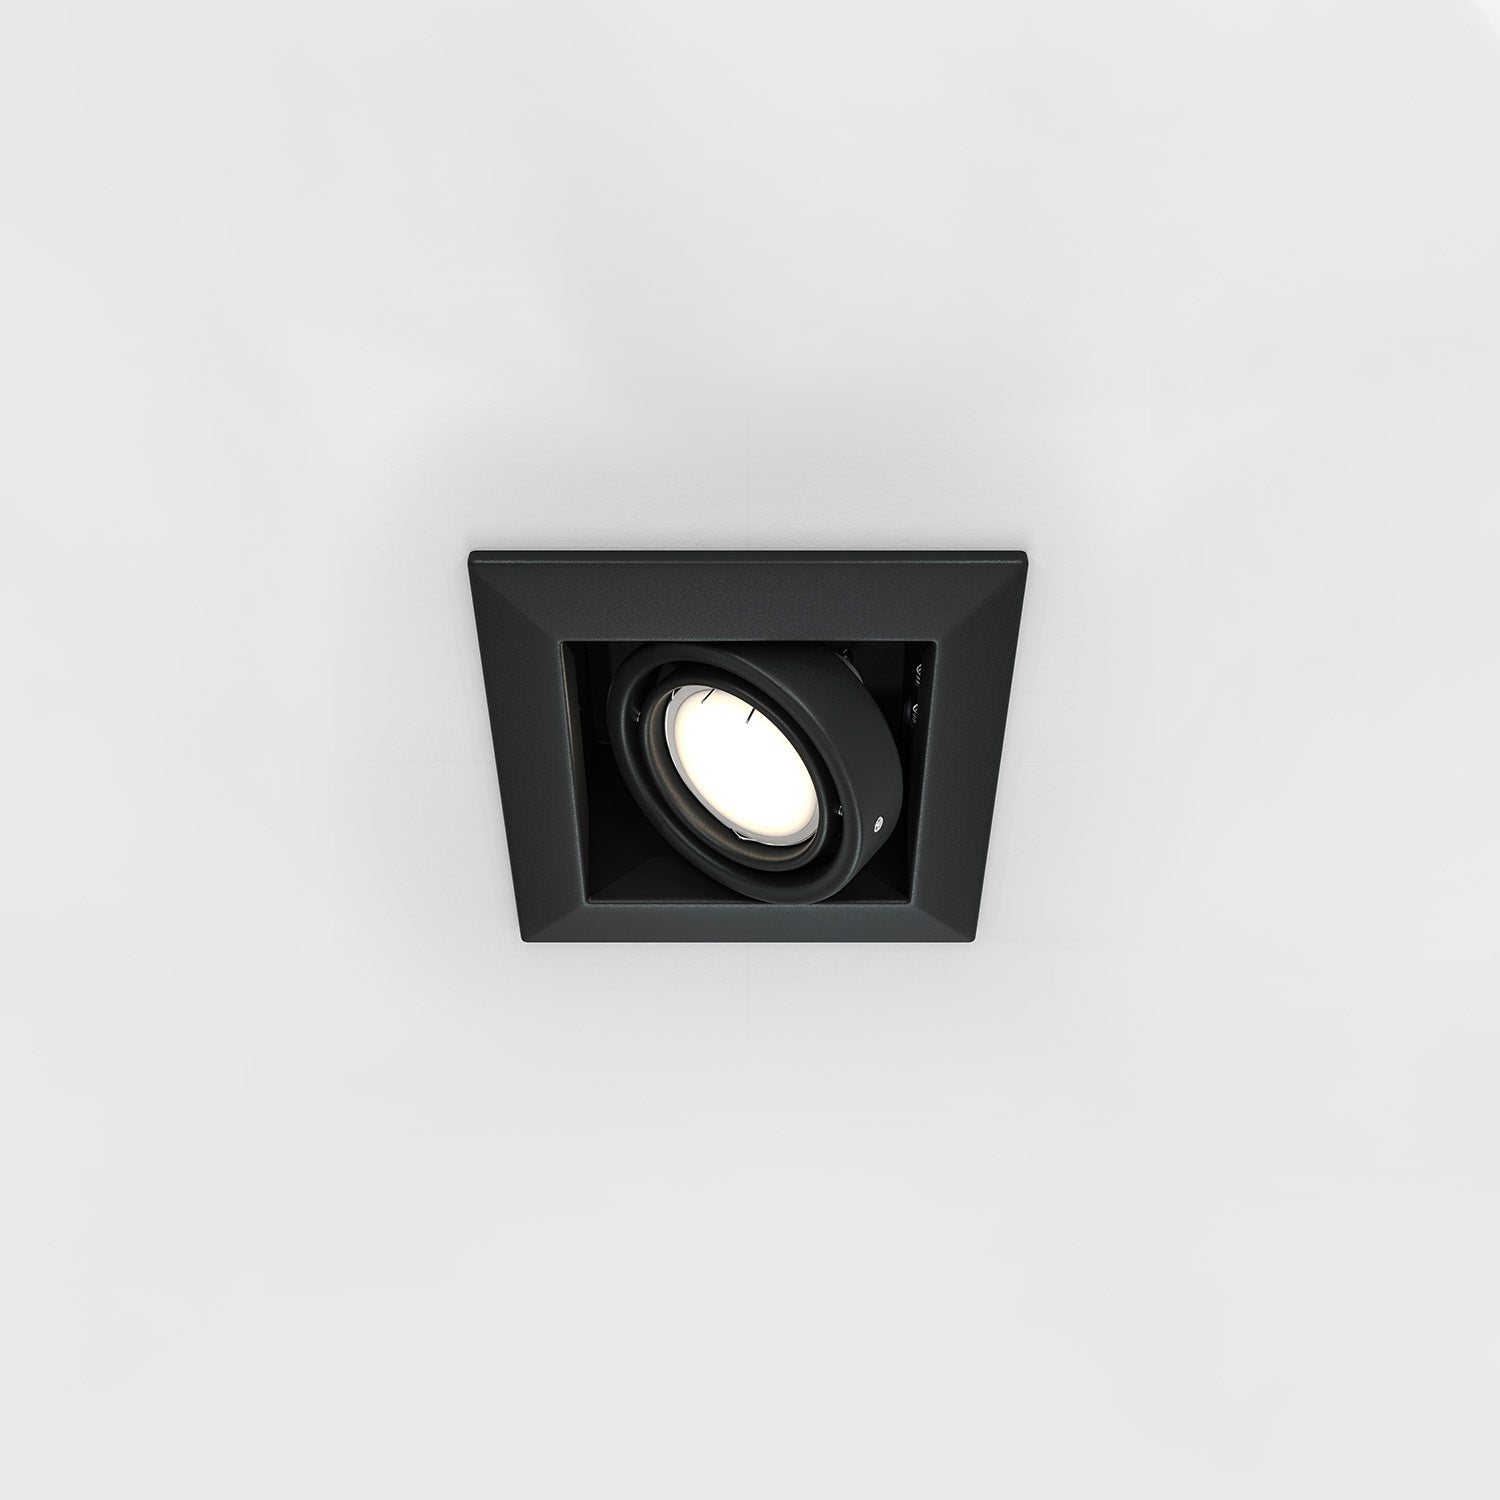 METALL MODERN A - Quadratischer Strahler 126 mm schwarz oder weiß, verstellbar